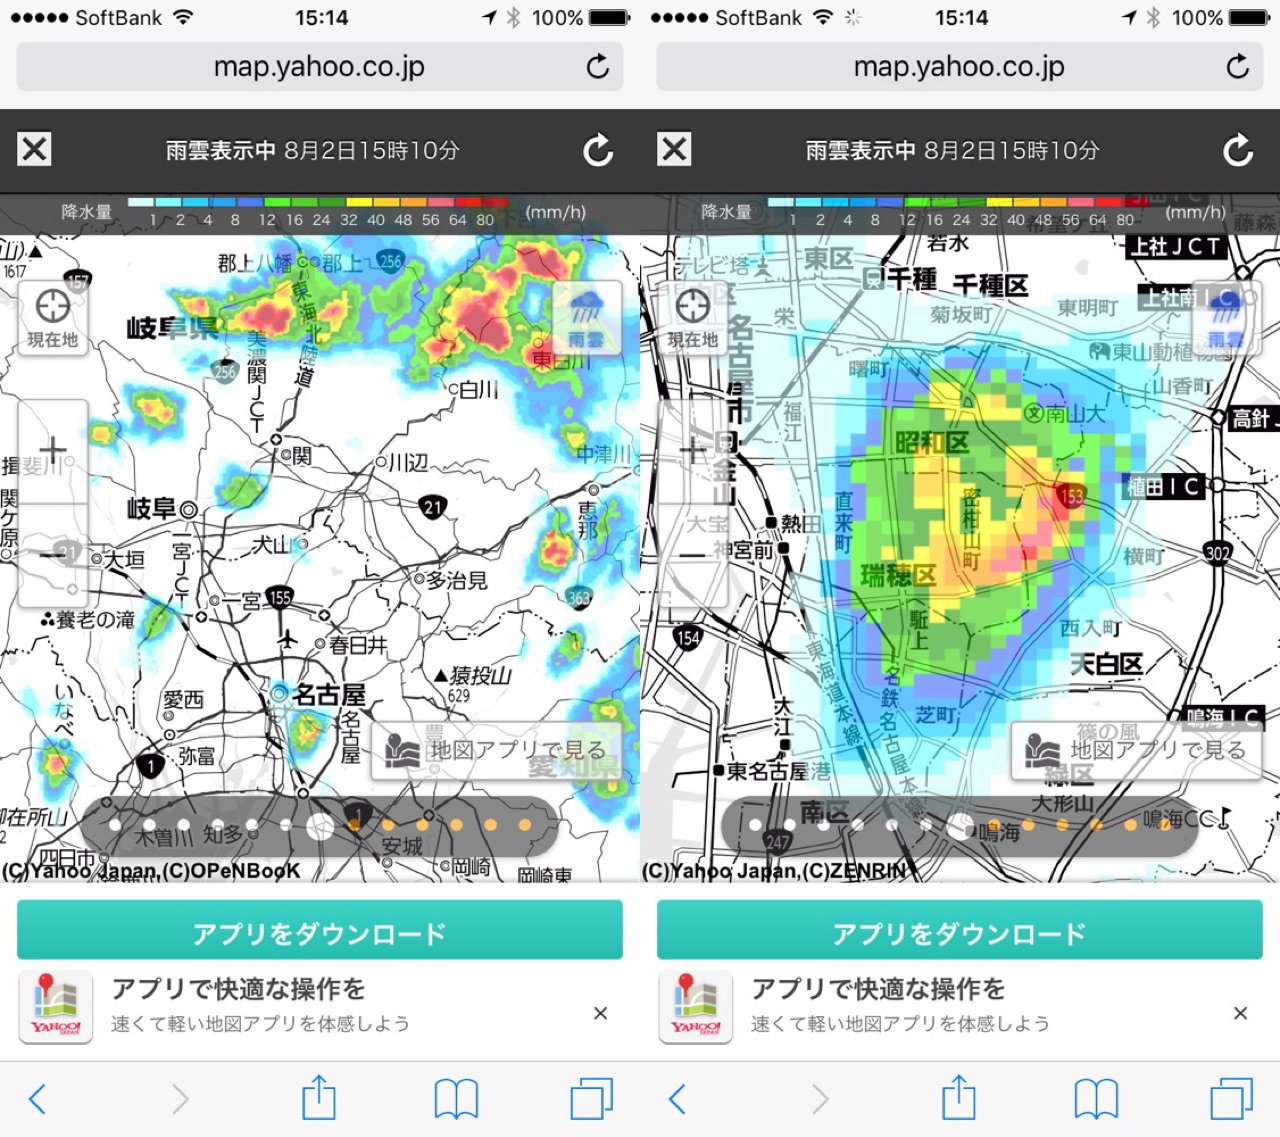 名古屋でもゲリラ豪雨かー。 https://t.co/lLvb7VJdDv